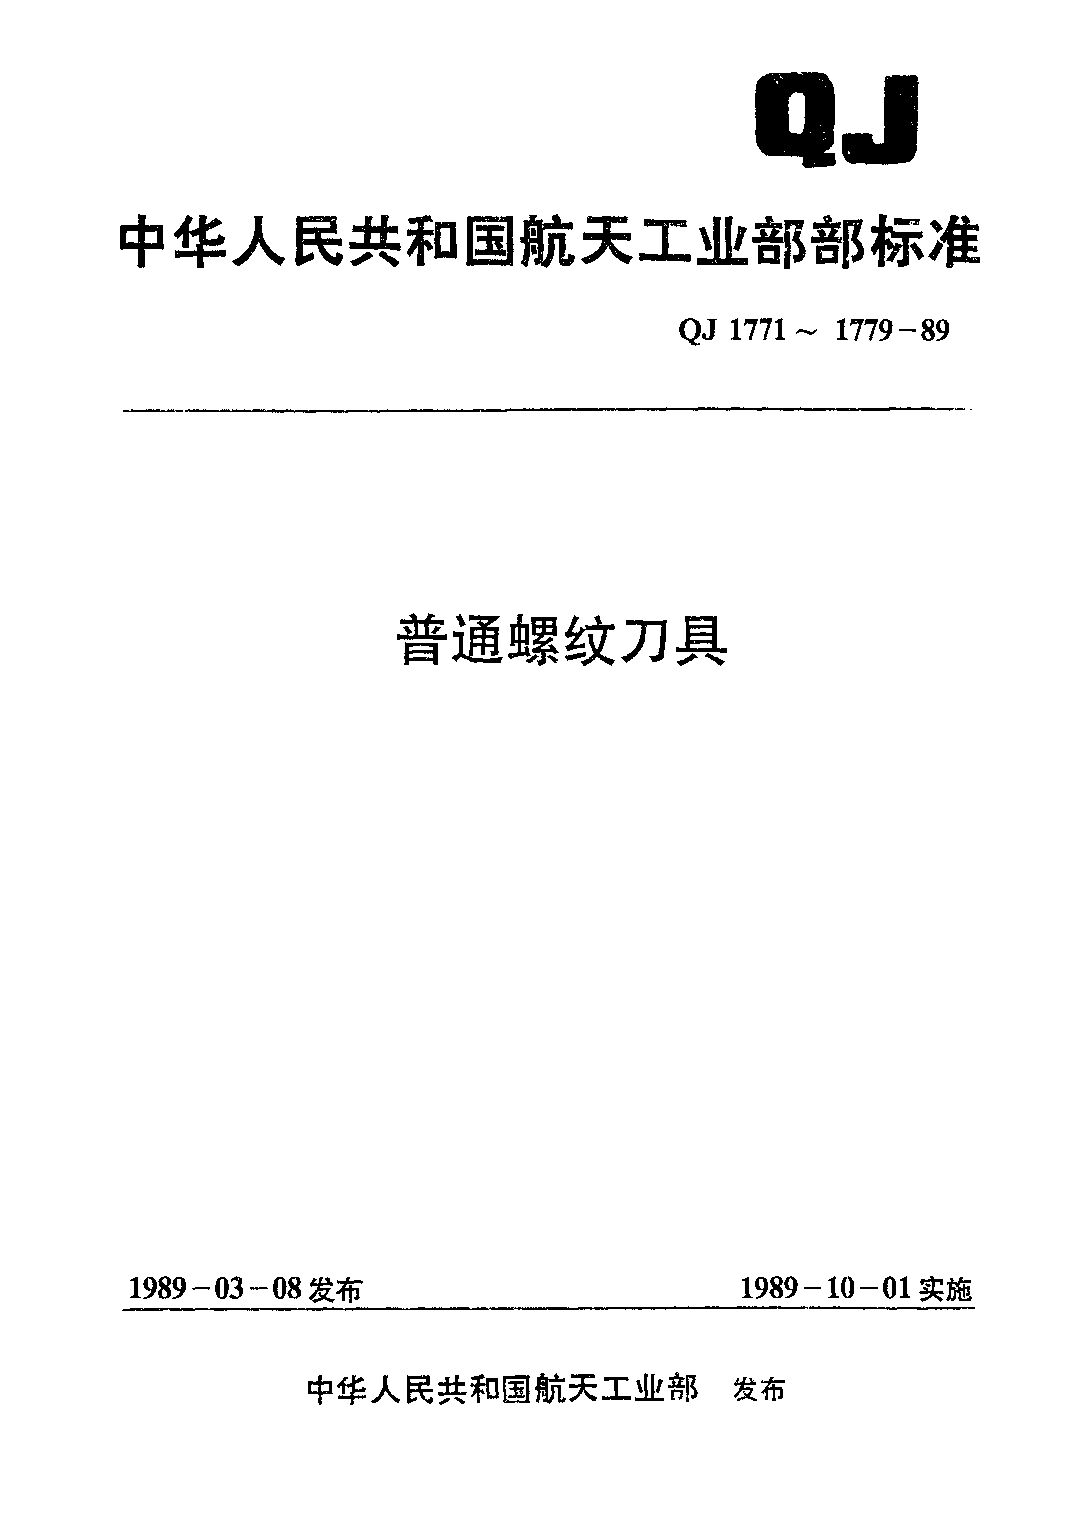 QJ 1772-1989封面图